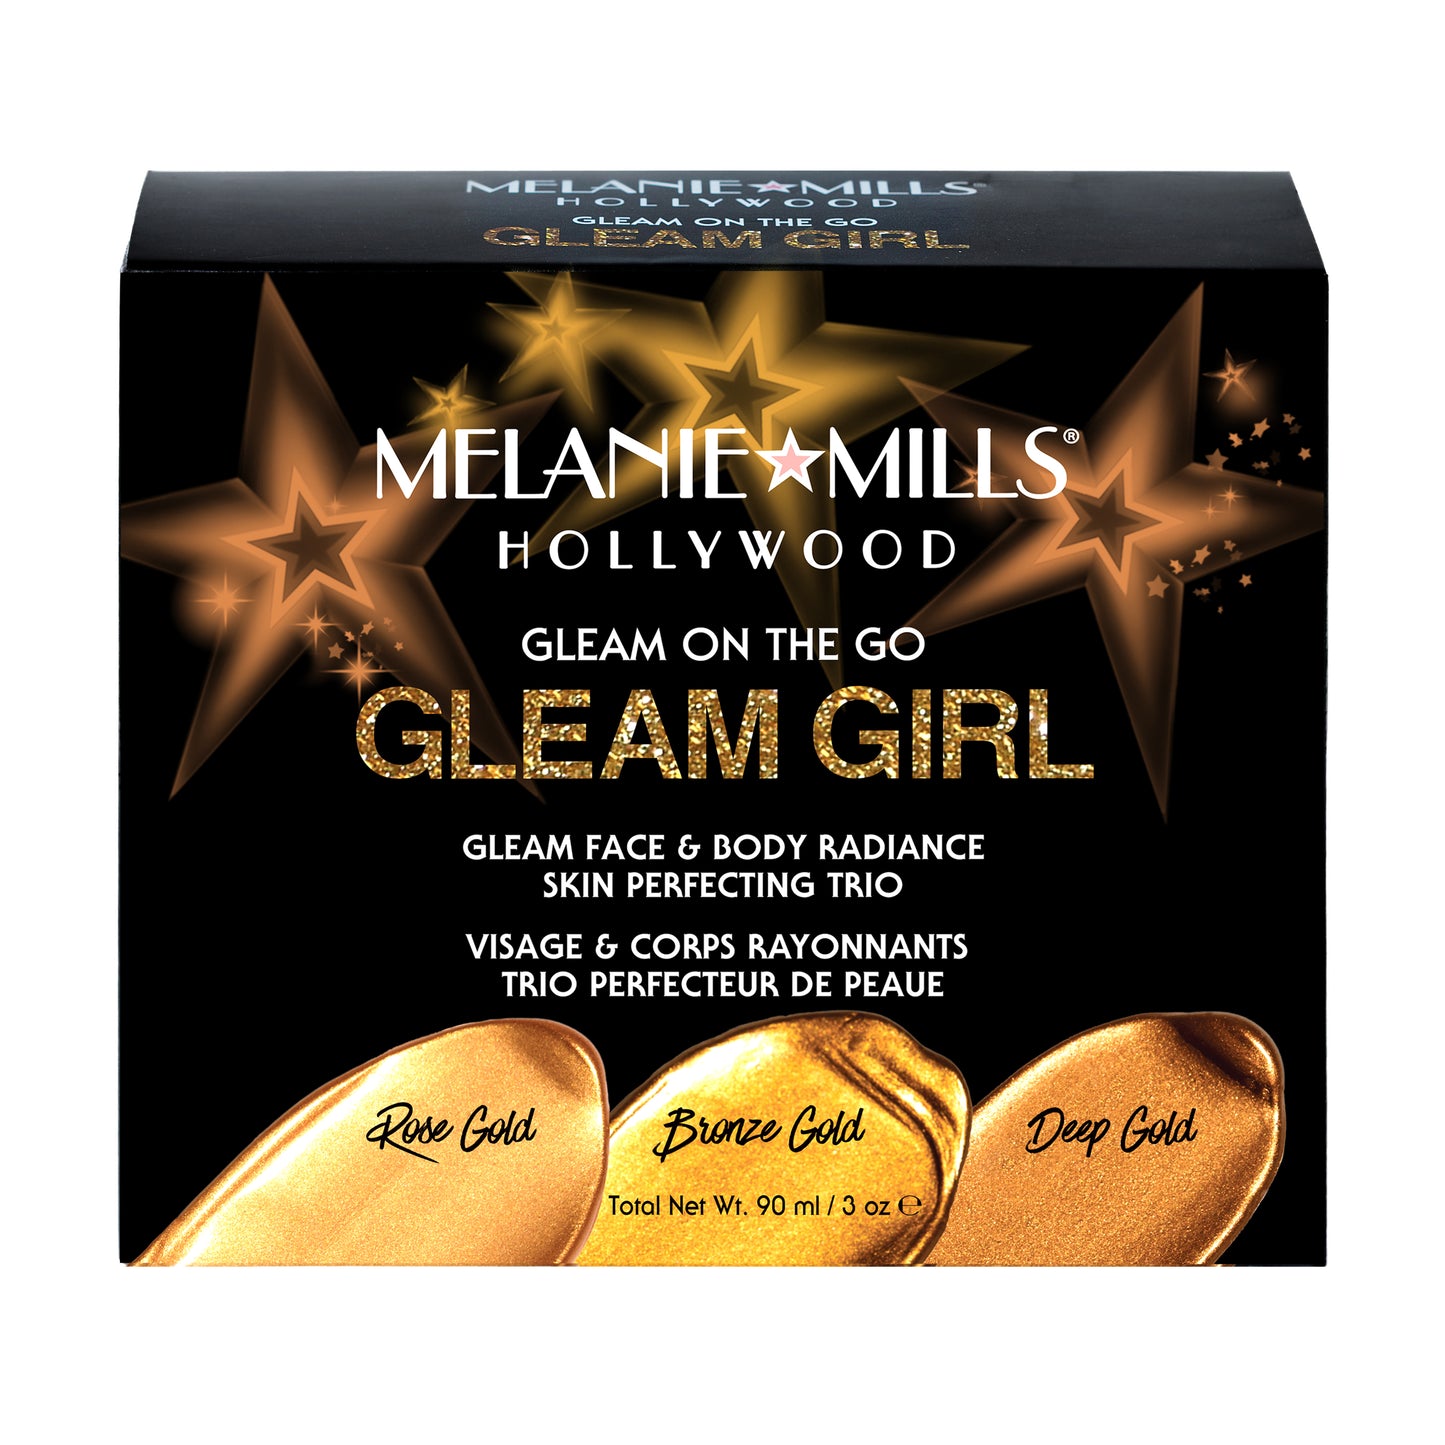 Melanie Mills Hollywood GLEAM GIRL Gleam on the Go Body Radiance Kit